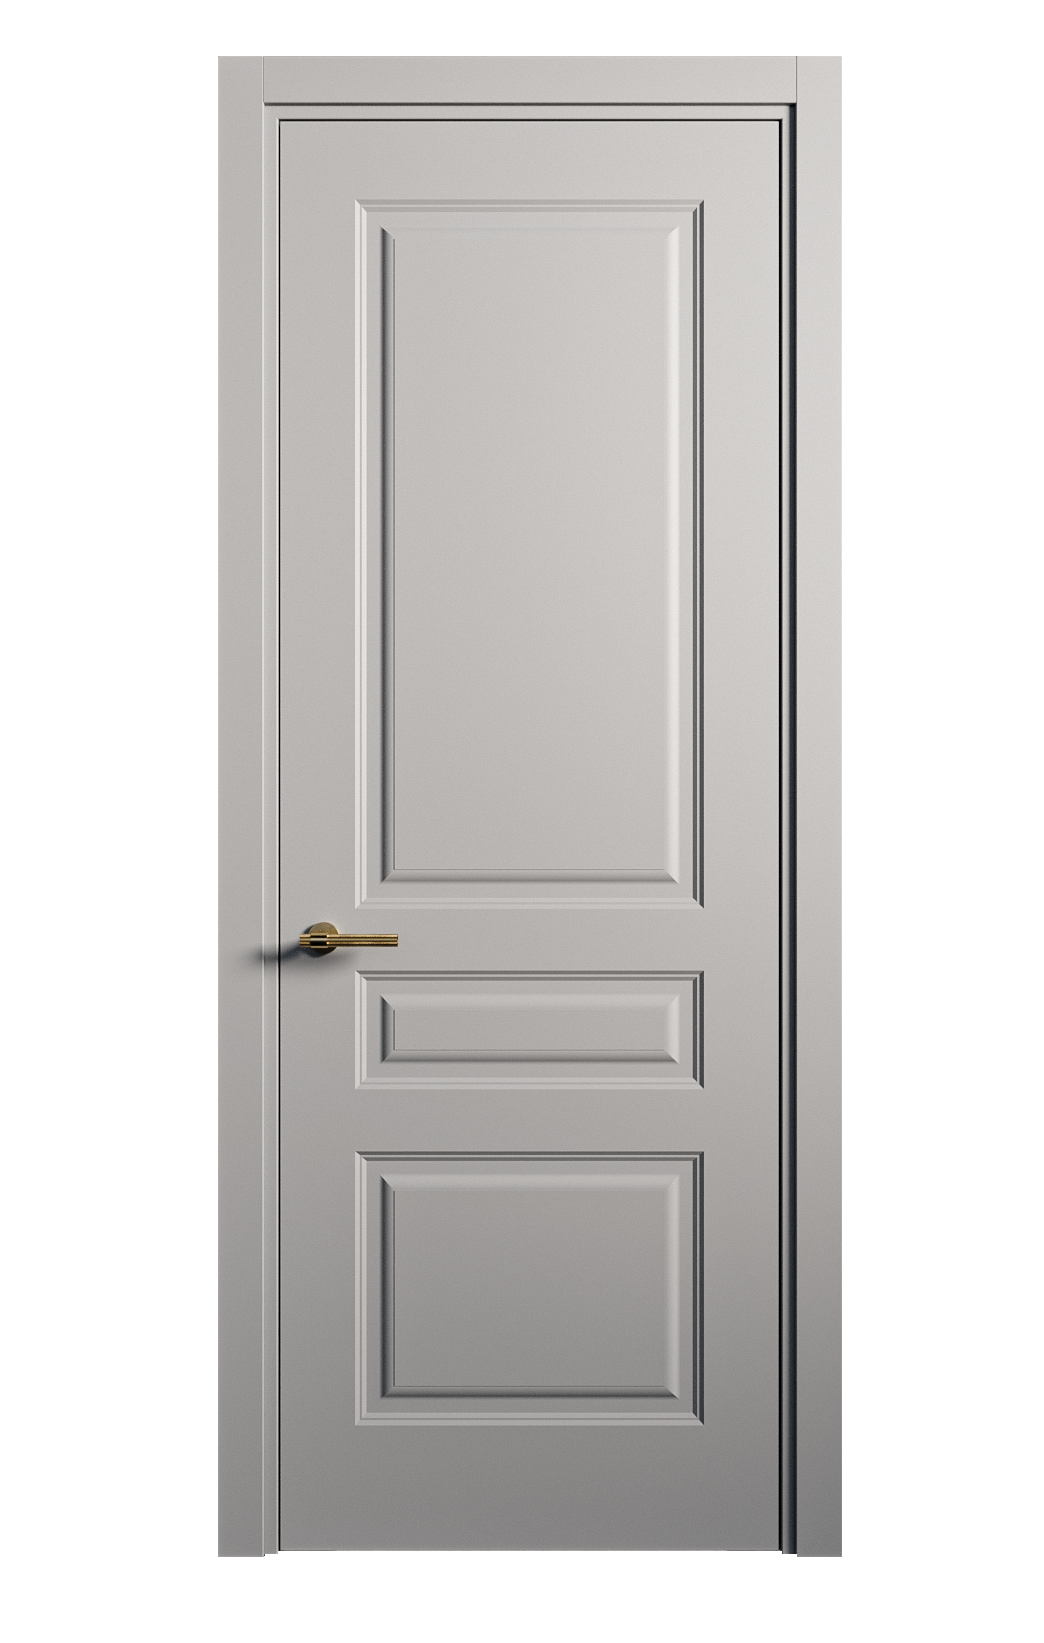 Межкомнатная дверь Вита-2 глухая эмаль ral 7040 26326